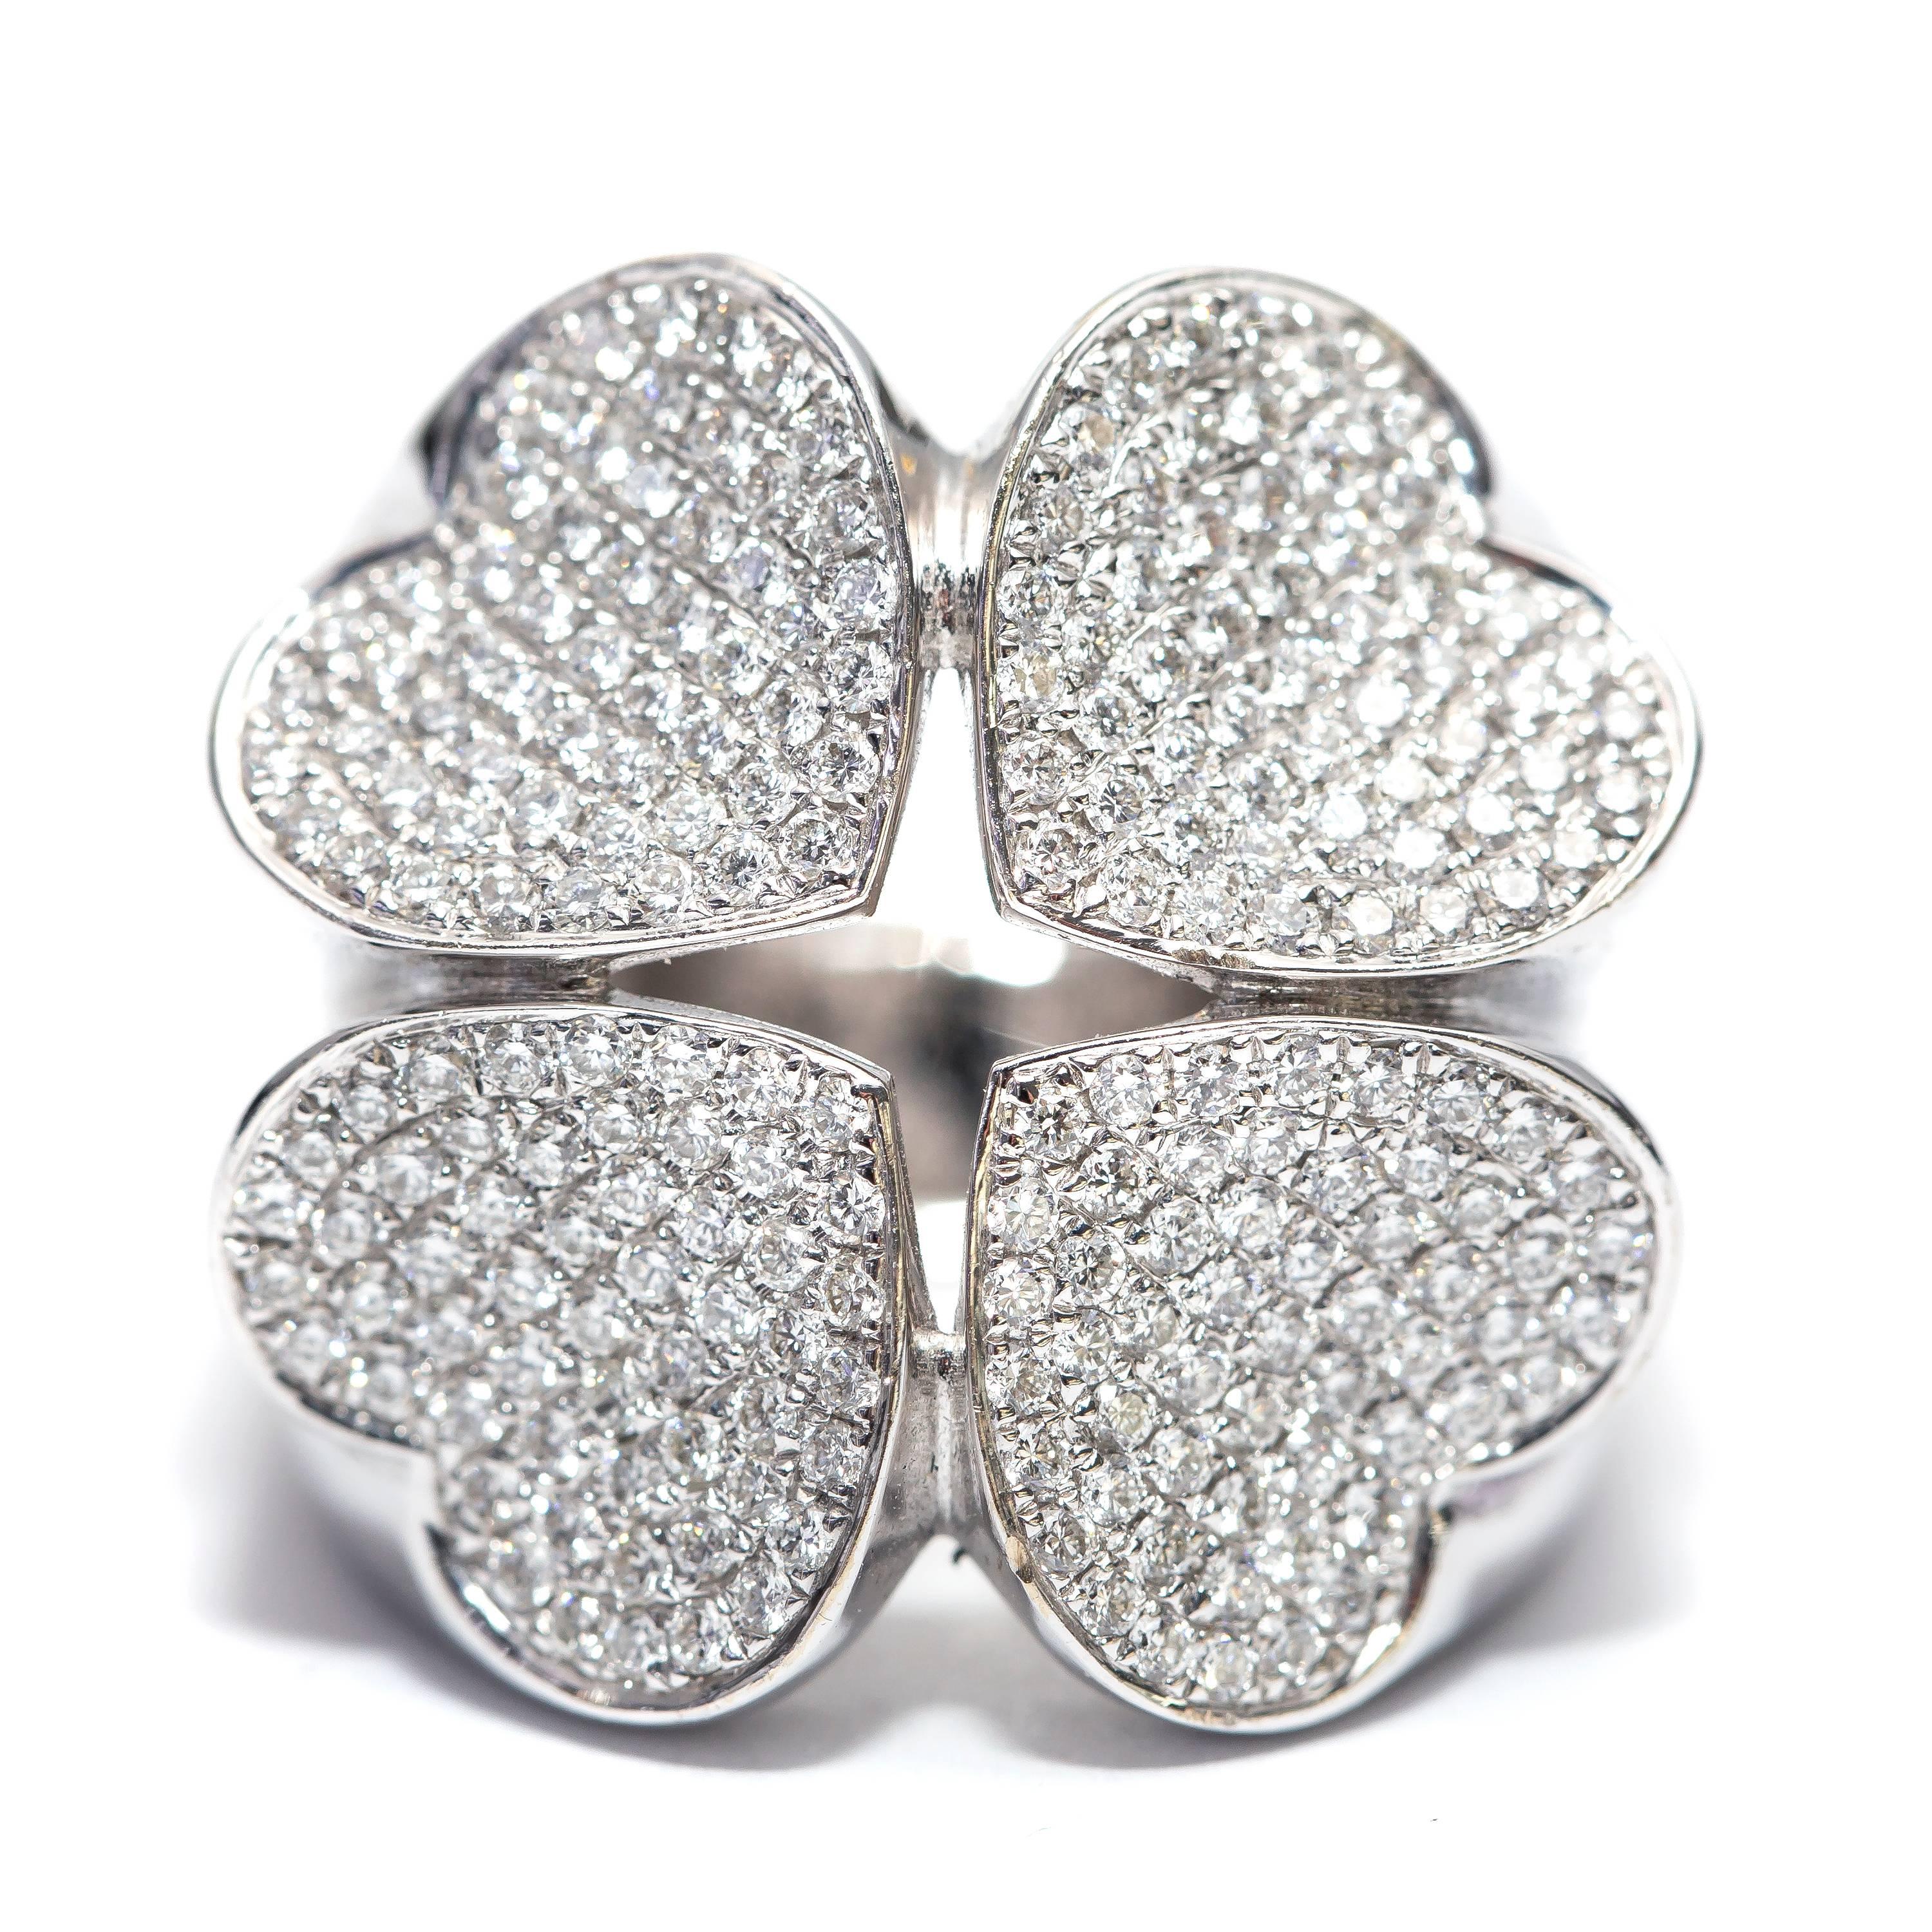 Diese wunderschöne Fancy Diamond Love Heart Ring mit vier schillernden geformten Herzen, die 1,75 Karat Runde Brillant H-SI1 Diamanten. Der Four Shape bringt moderne Eleganz und zeitlosen Glamour, gefasst in 18 Karat Weißgold. Britisch gepunzt. UK